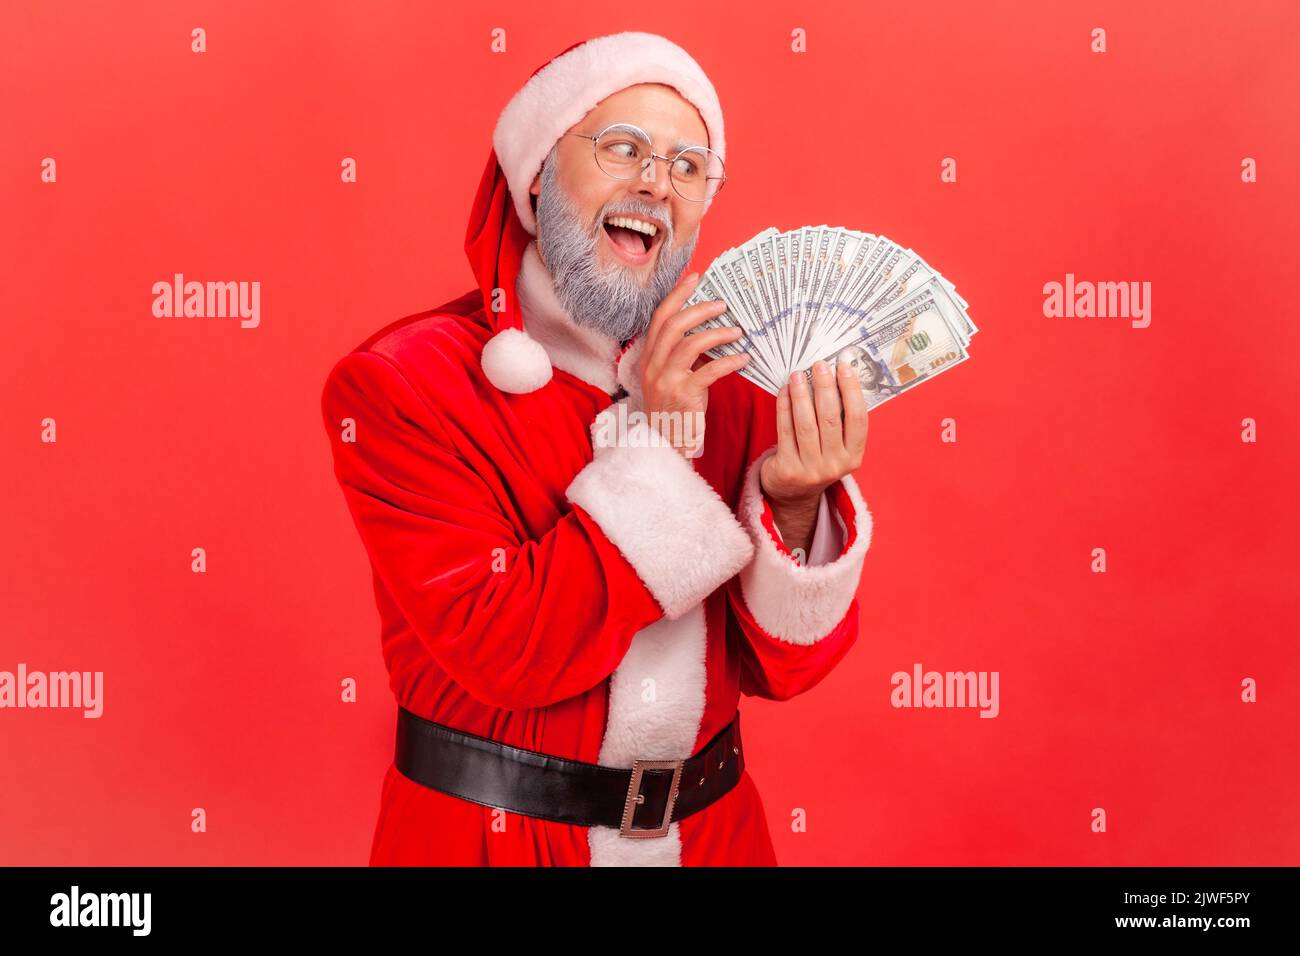 Porträt eines älteren Mannes mit grauem Bart, der ein weihnachtsmann-Kostüm mit aufgeregter Expression trägt, gieriger Mann mit Dollarfan, der Banknoten ansieht. Innenaufnahme des Studios isoliert auf rotem Hintergrund. Stockfoto